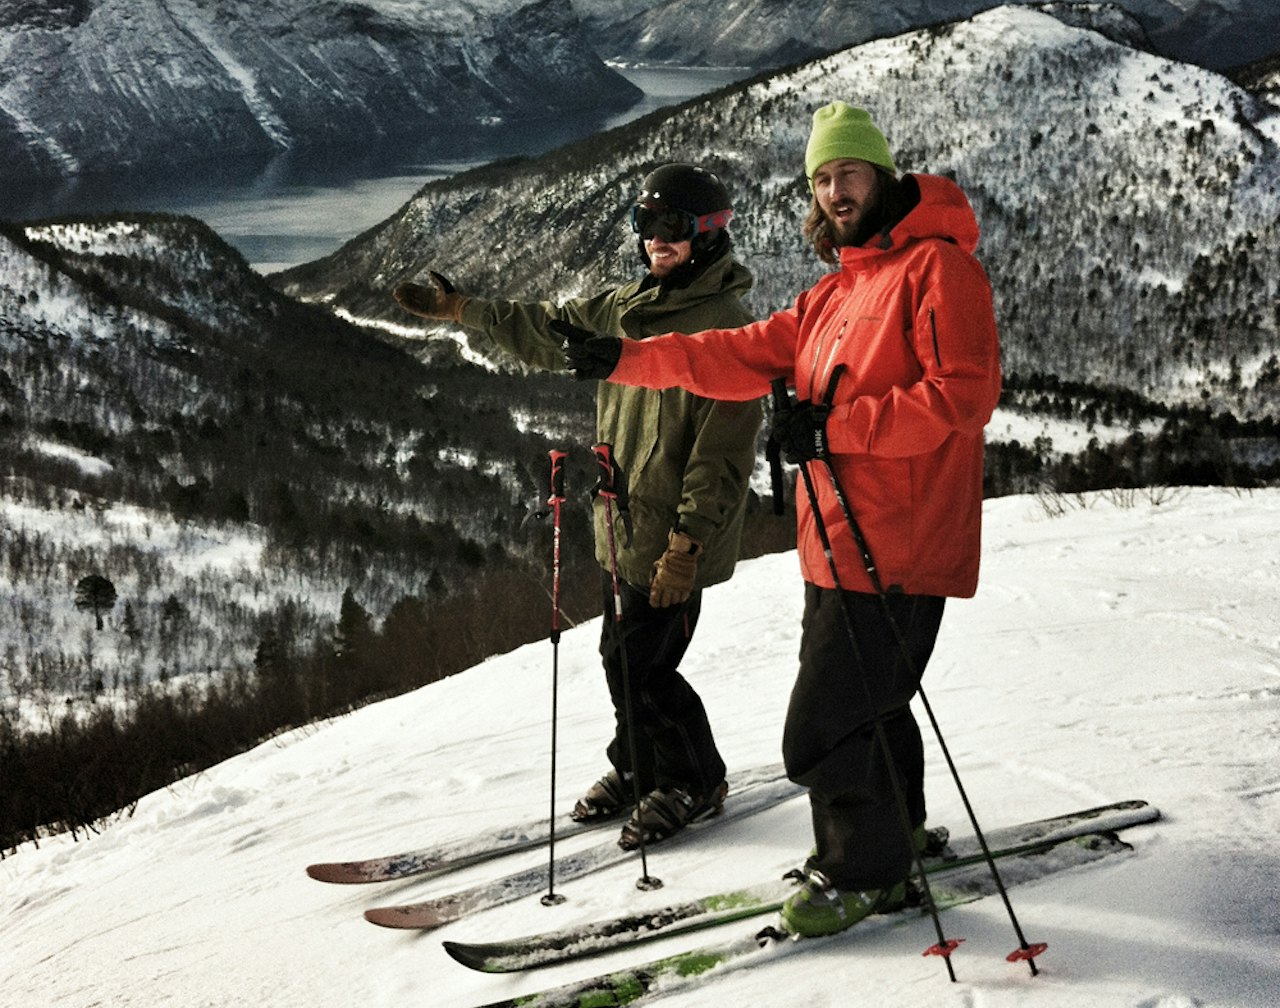 JA, VI ELSKER: Norsk skisentre og deres slagord. Fart og spenning på ditt nærmeste høyfjell! PS. Kan du se hvor bildet er tatt?  Foto: HP Hval